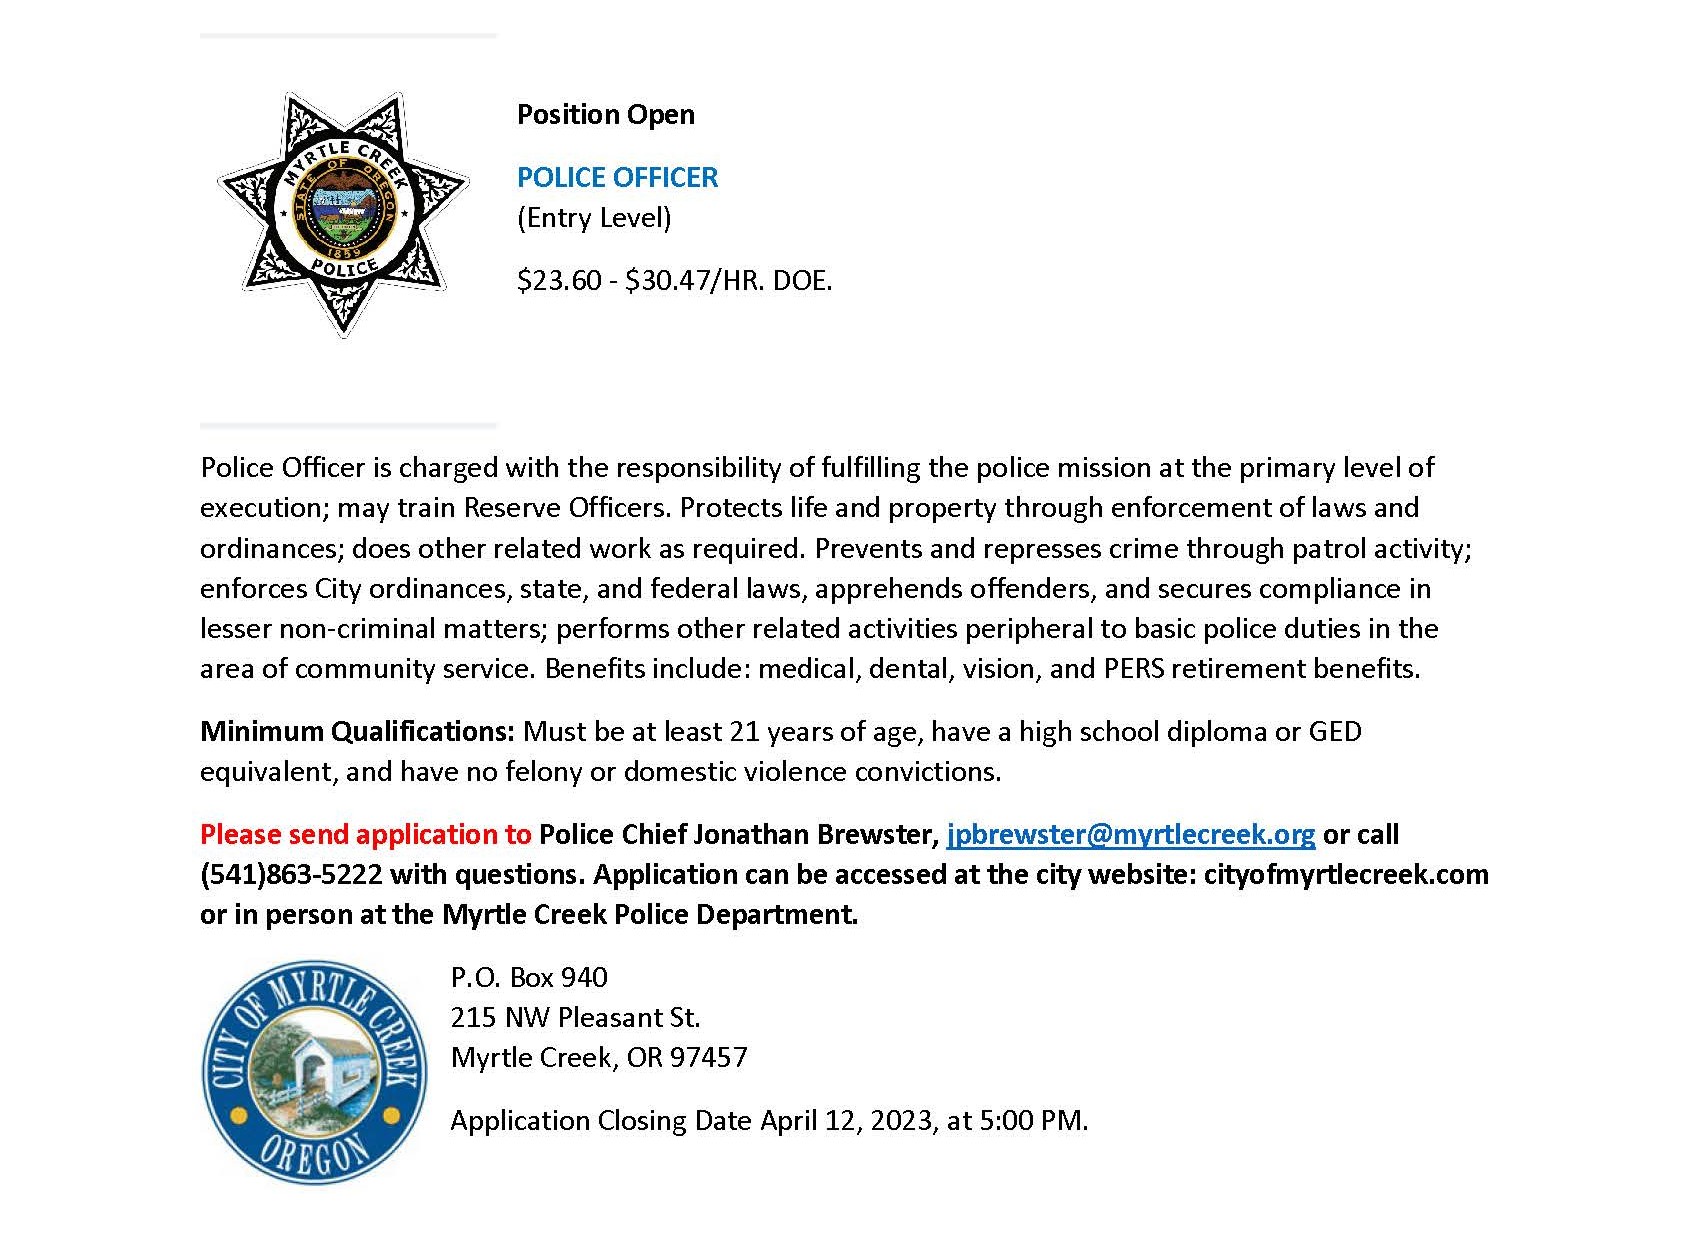 Police Officer 3-2023 job posting